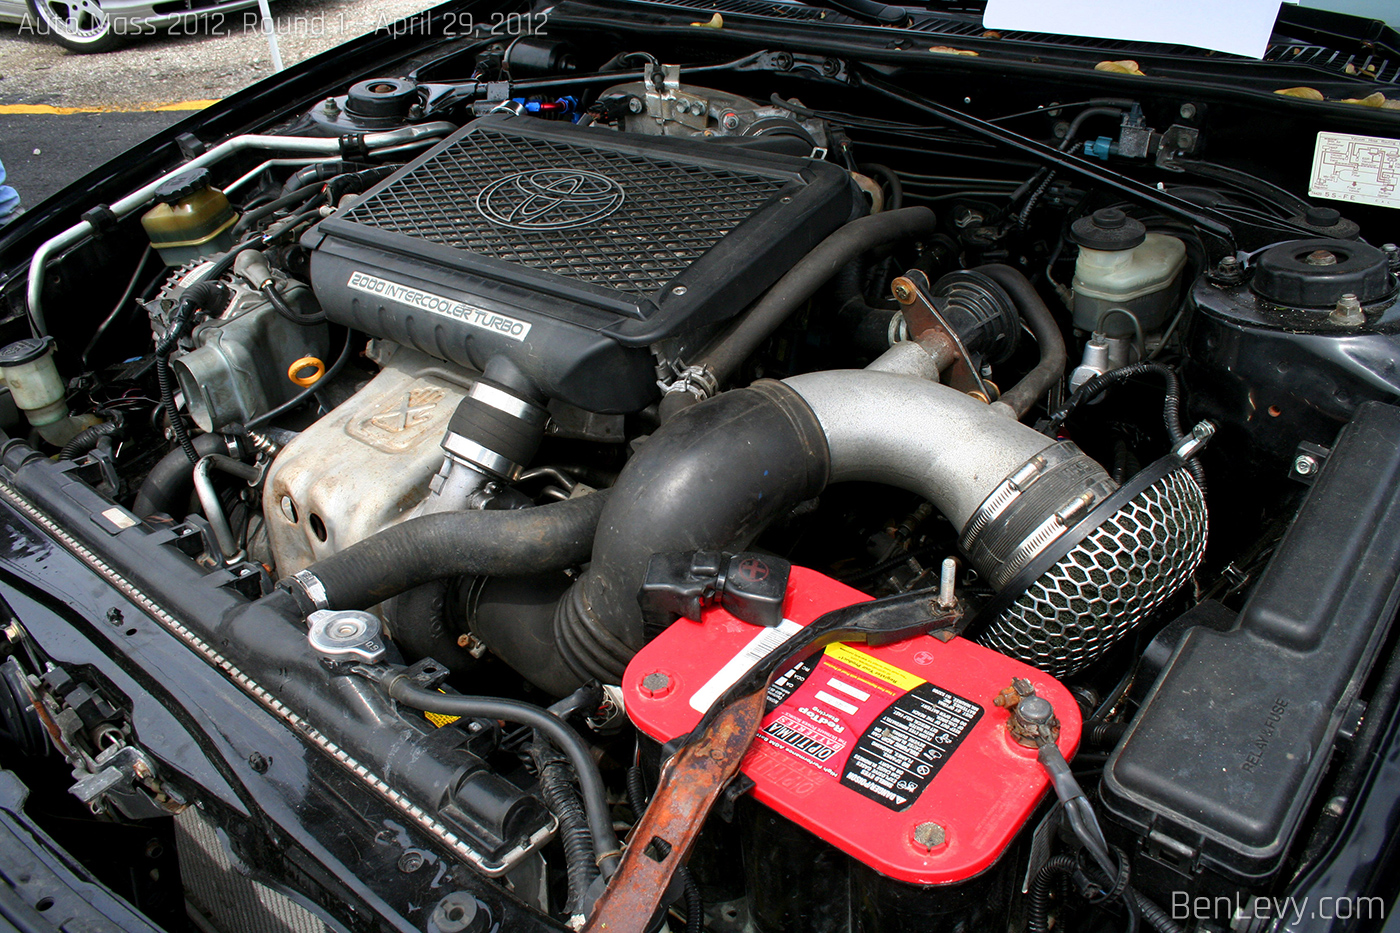 3S-GTE Engine